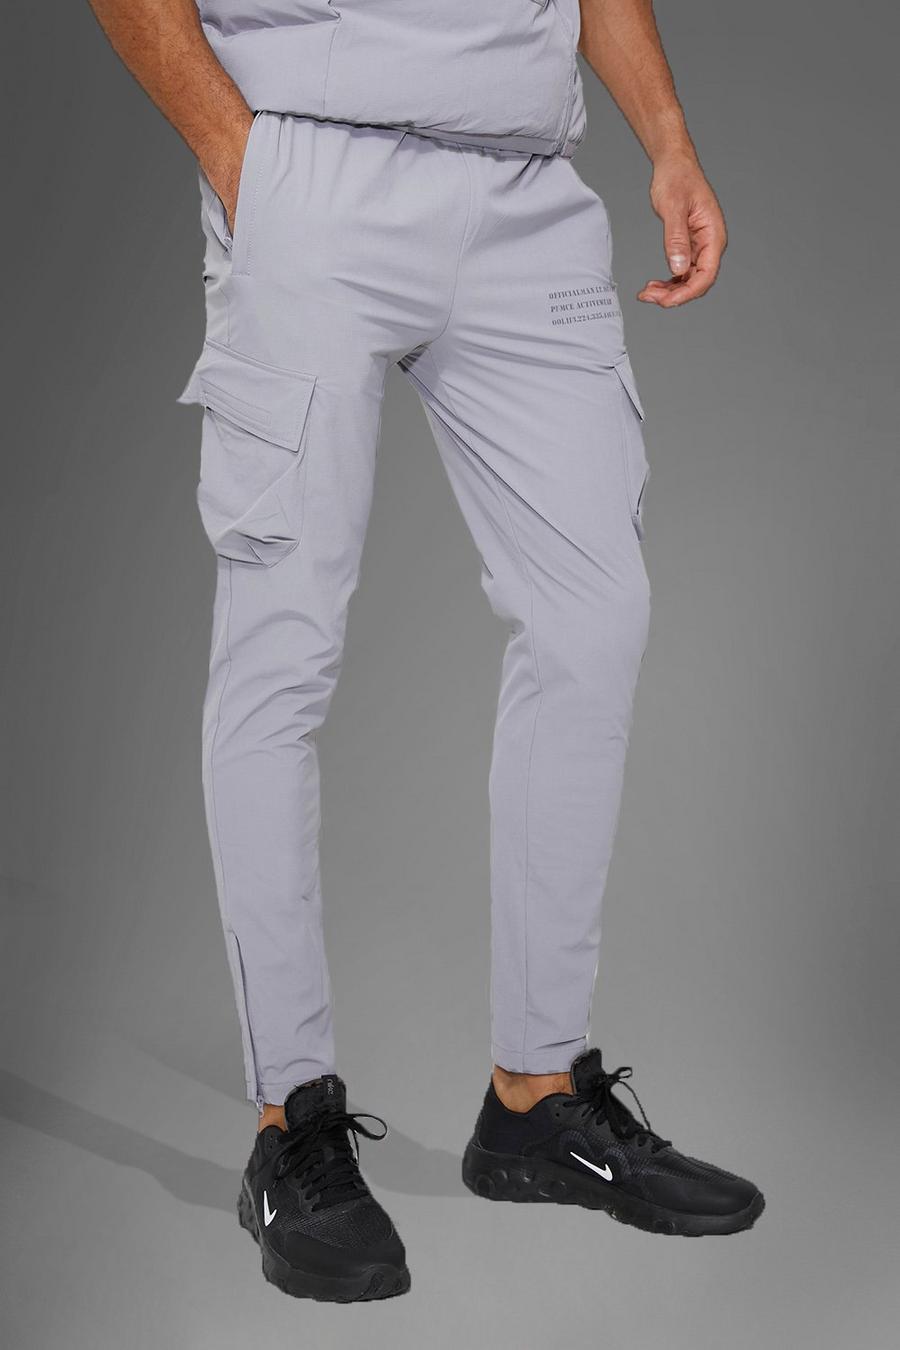 Pantalón deportivo MAN Active cargo técnico, Light grey gris image number 1